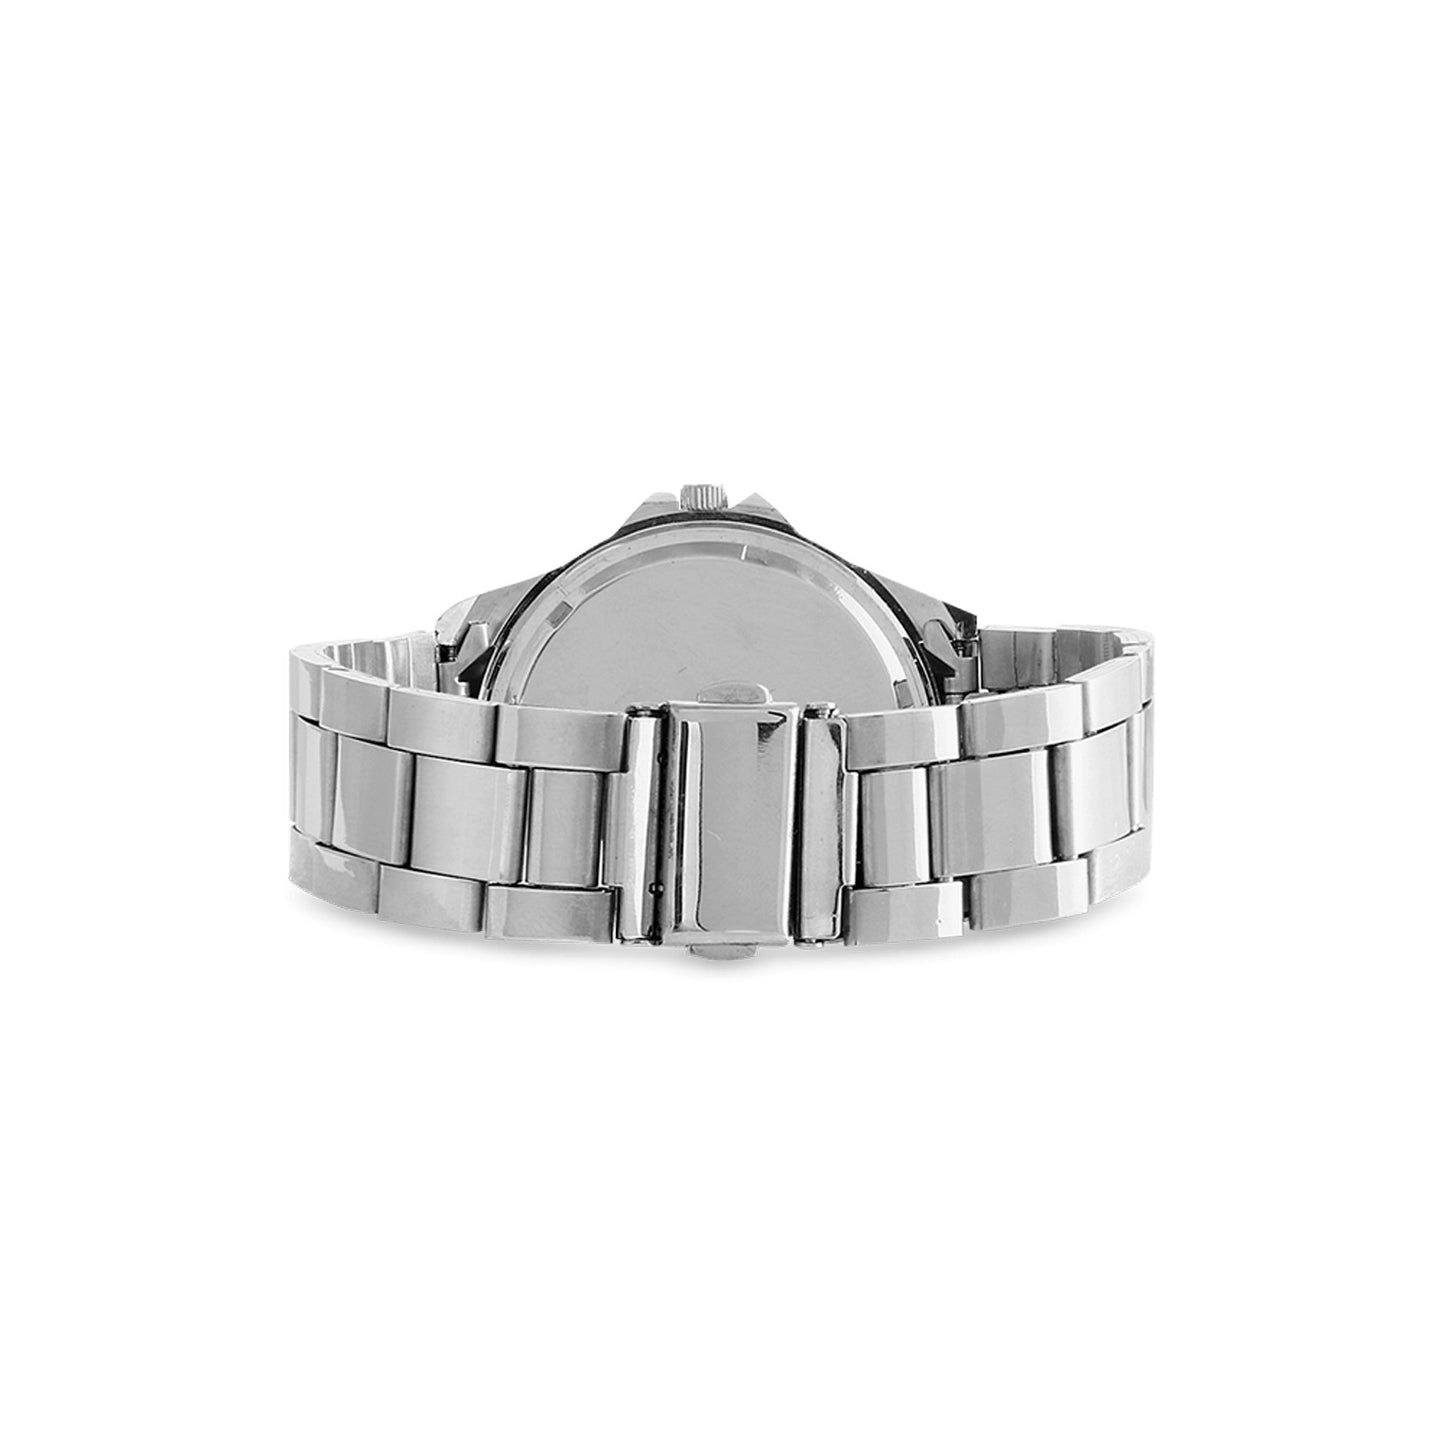 Moore Mafia Watch Unisex Stainless Steel Watch